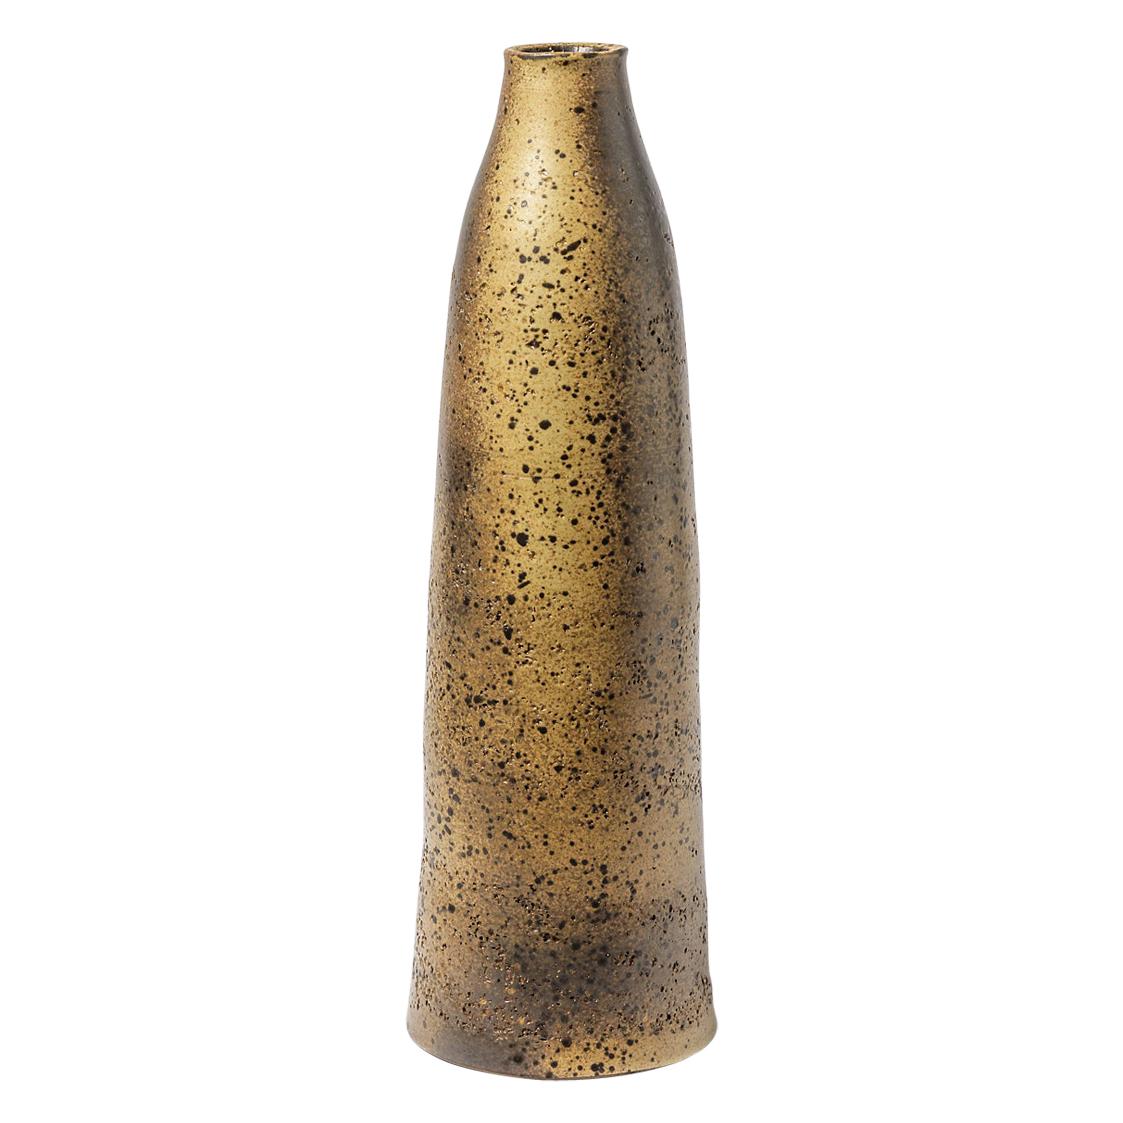 Mid-20th Century Large Stoneware Ceramic Bottle or Vase Signed 